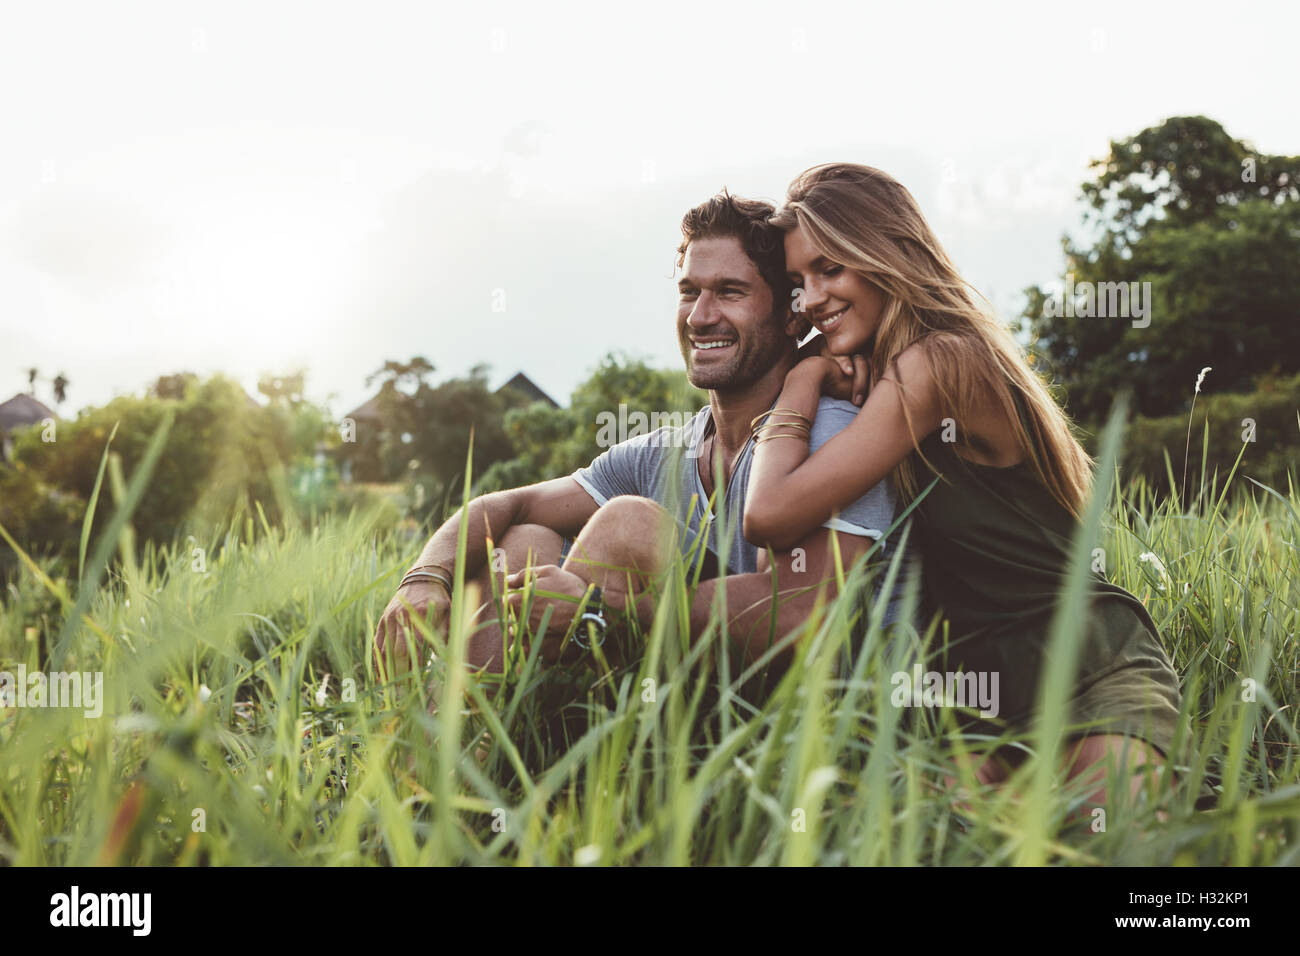 Im Freien Schuss der jungen glücklich verliebten sitzen auf der Wiese. Glückliches junges Paar Gras. Stockfoto